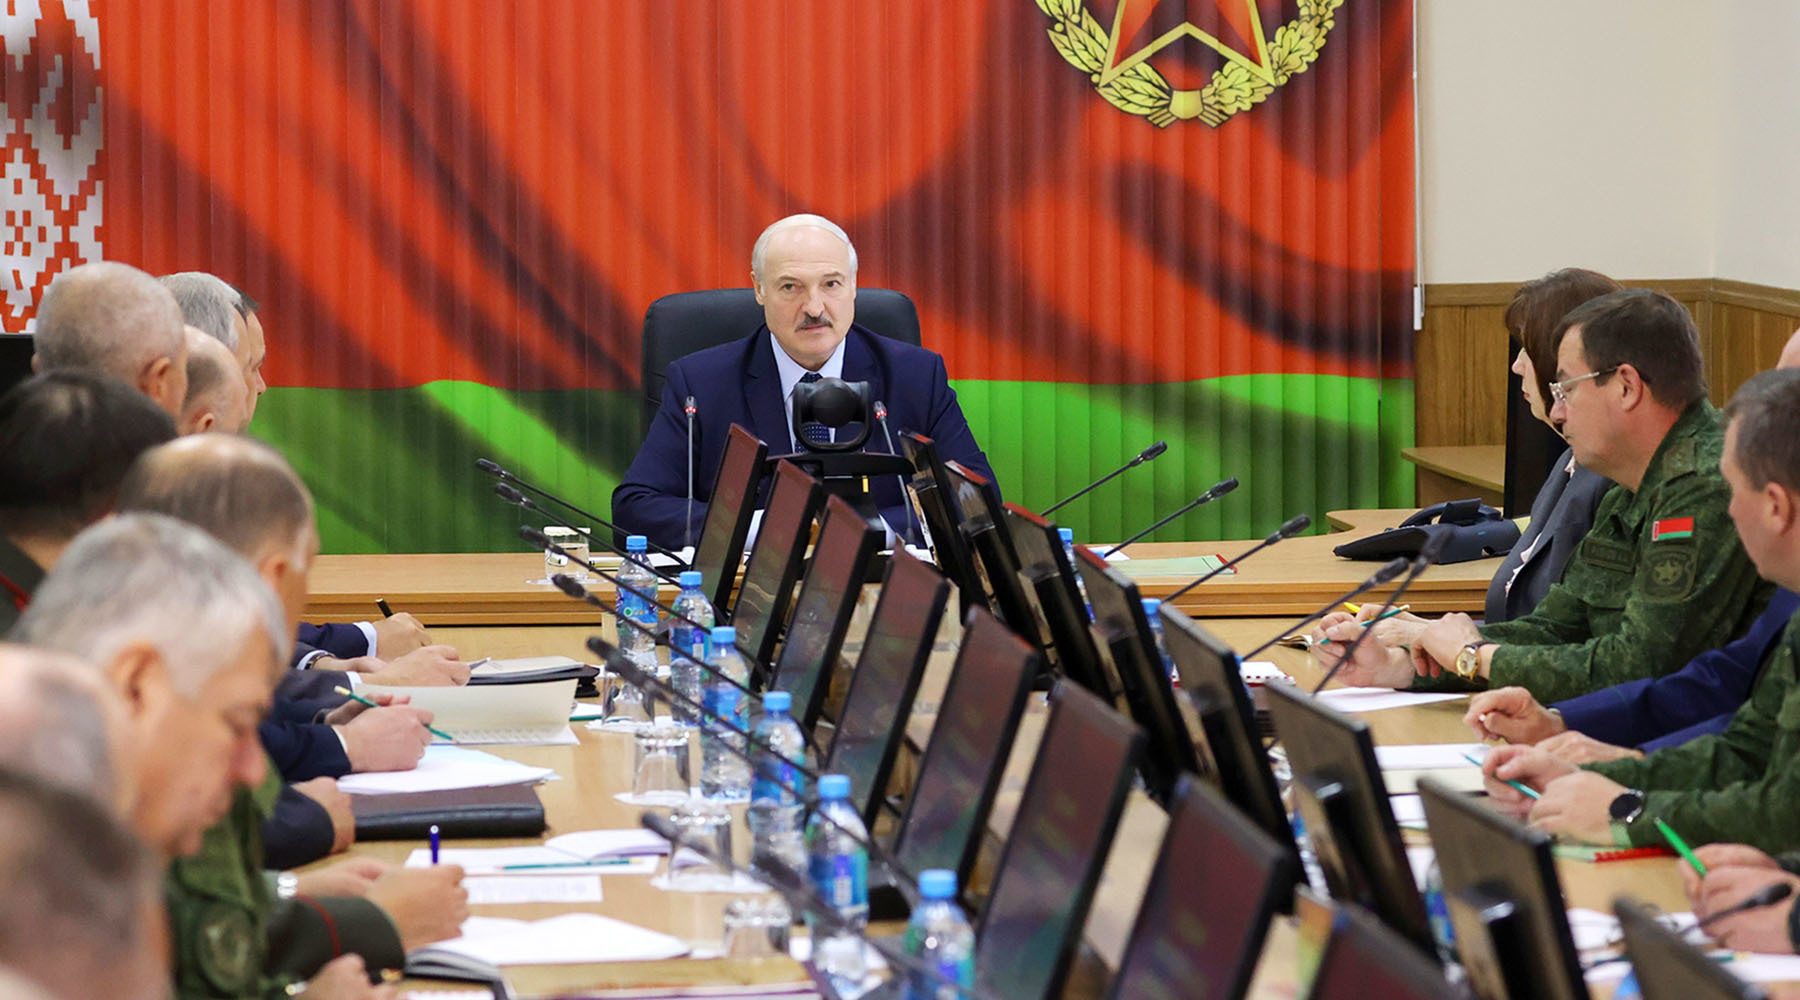 Лукашенко поставил крест на будущем Союзного государства с Россией Лукашенко, интеграции, Белоруссии, своей, таких, политику, часть, Москва, назад, можно, Союзное, сейчас, государство, думать, условиях, стоит, Союзном, враждебную, ничего, откровенно